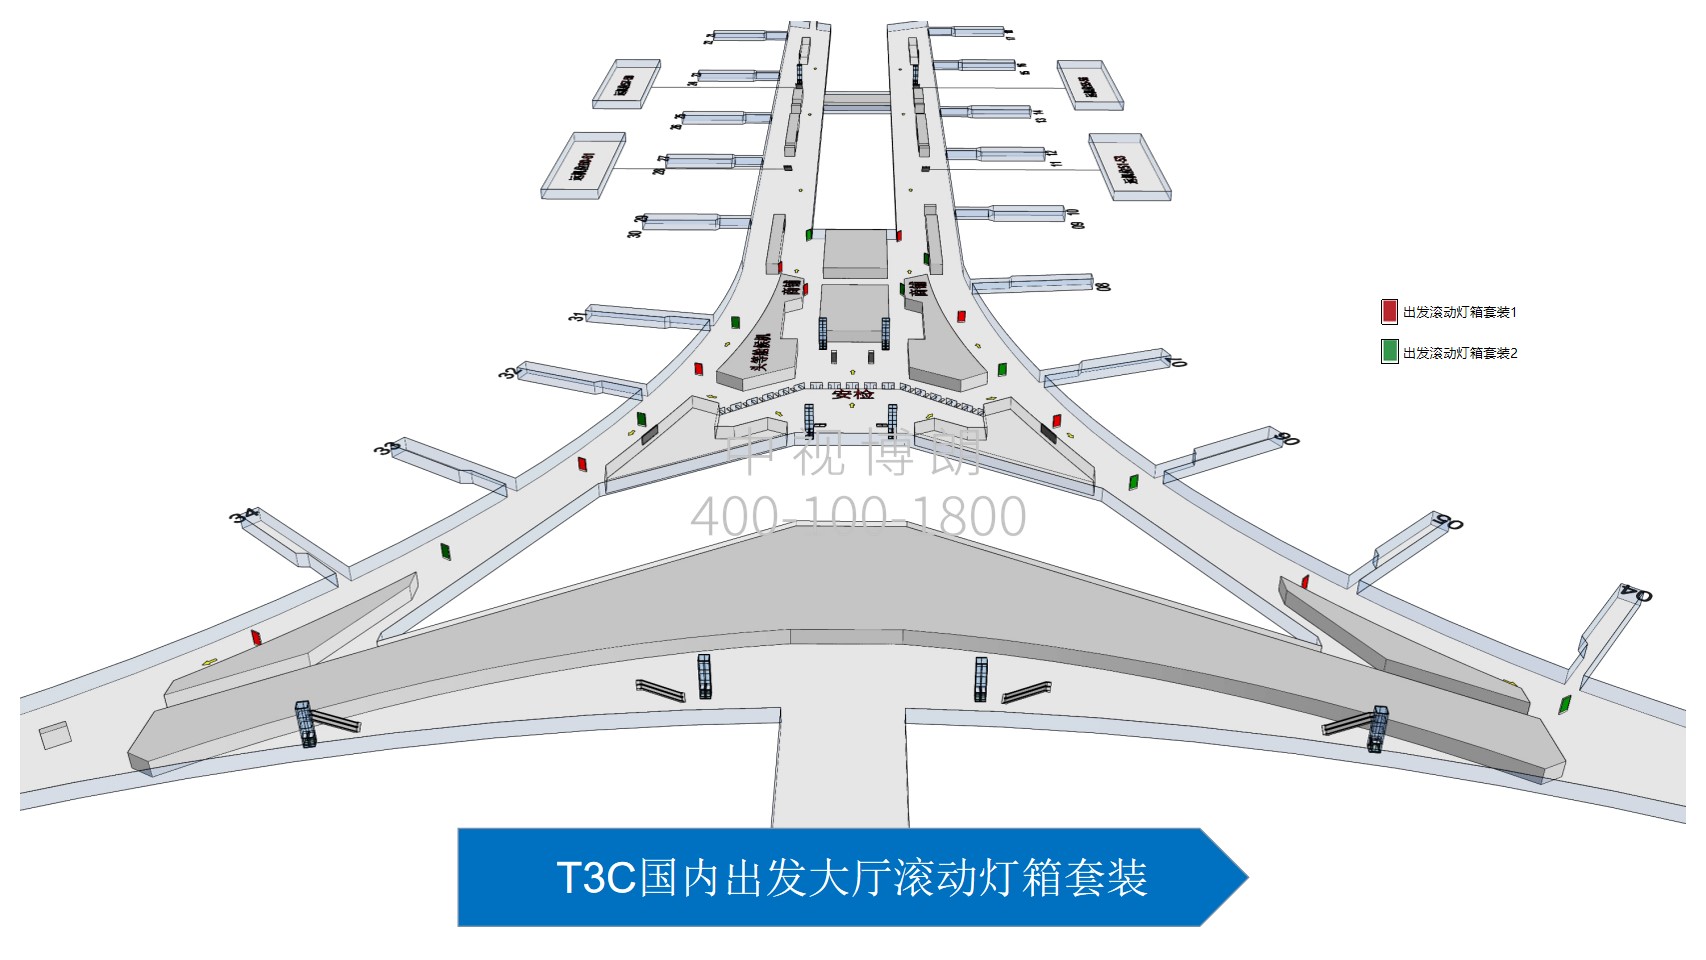 北京首都机场广告-T3C Domestic Departure Hall Rolling Light Box Set位置图